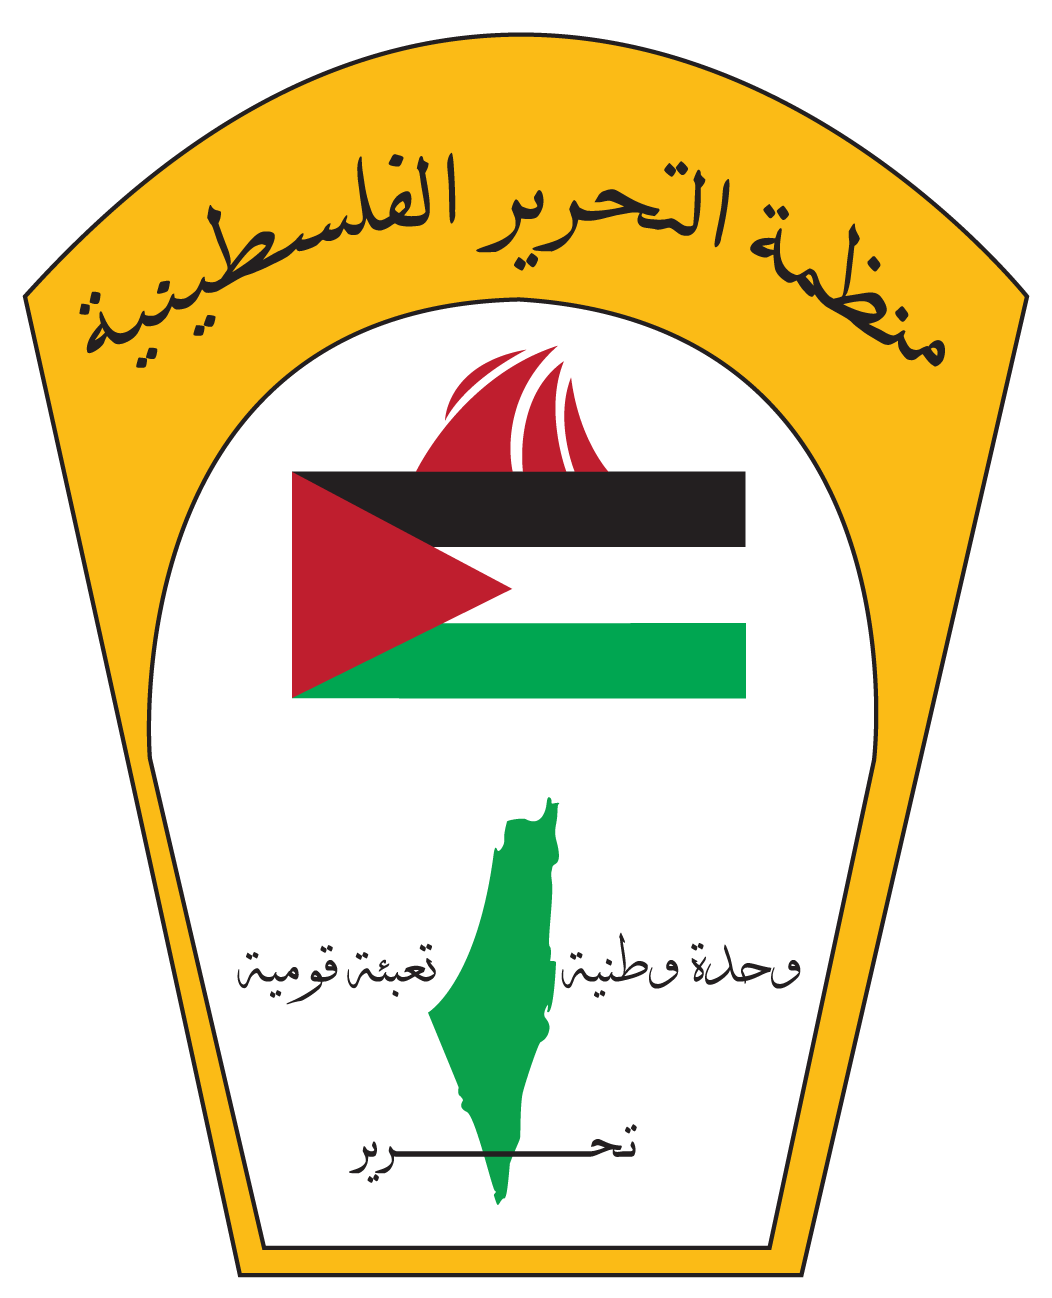 57 عاما على تأسيس منظمة التحرير الفلسطينية